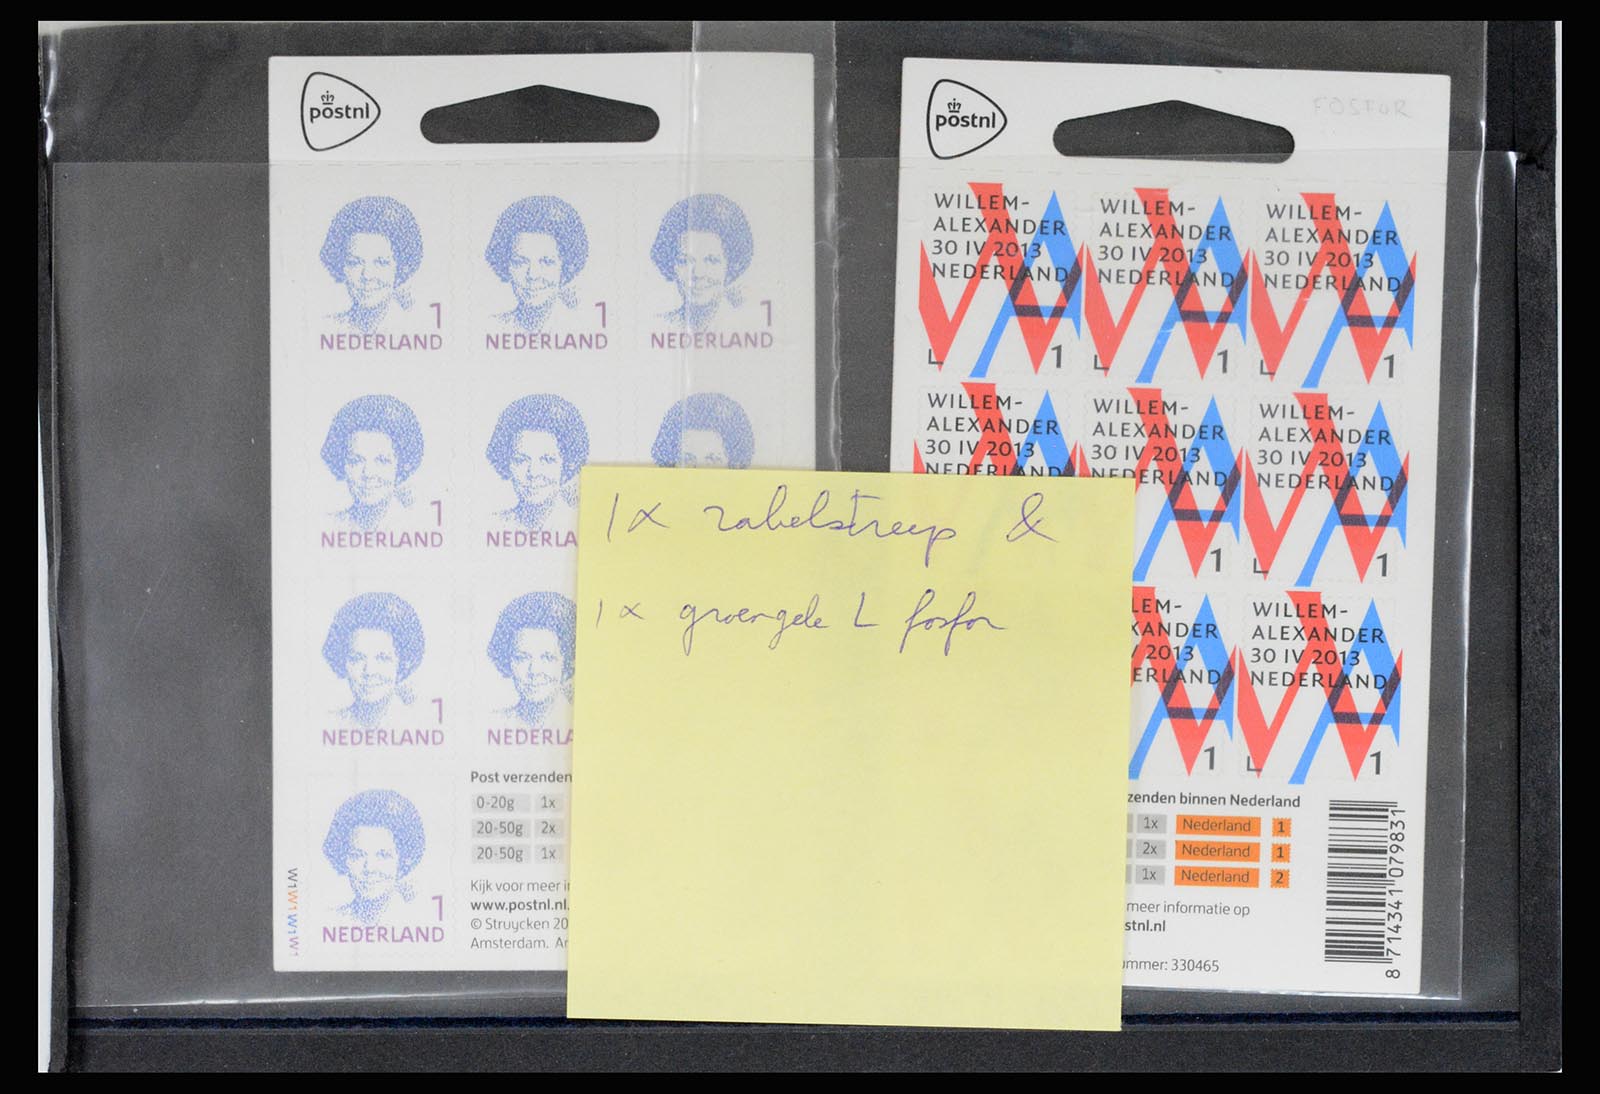 37044 001 - Stamp collection 37044 Netherlands better sheetlets 2002-2009.